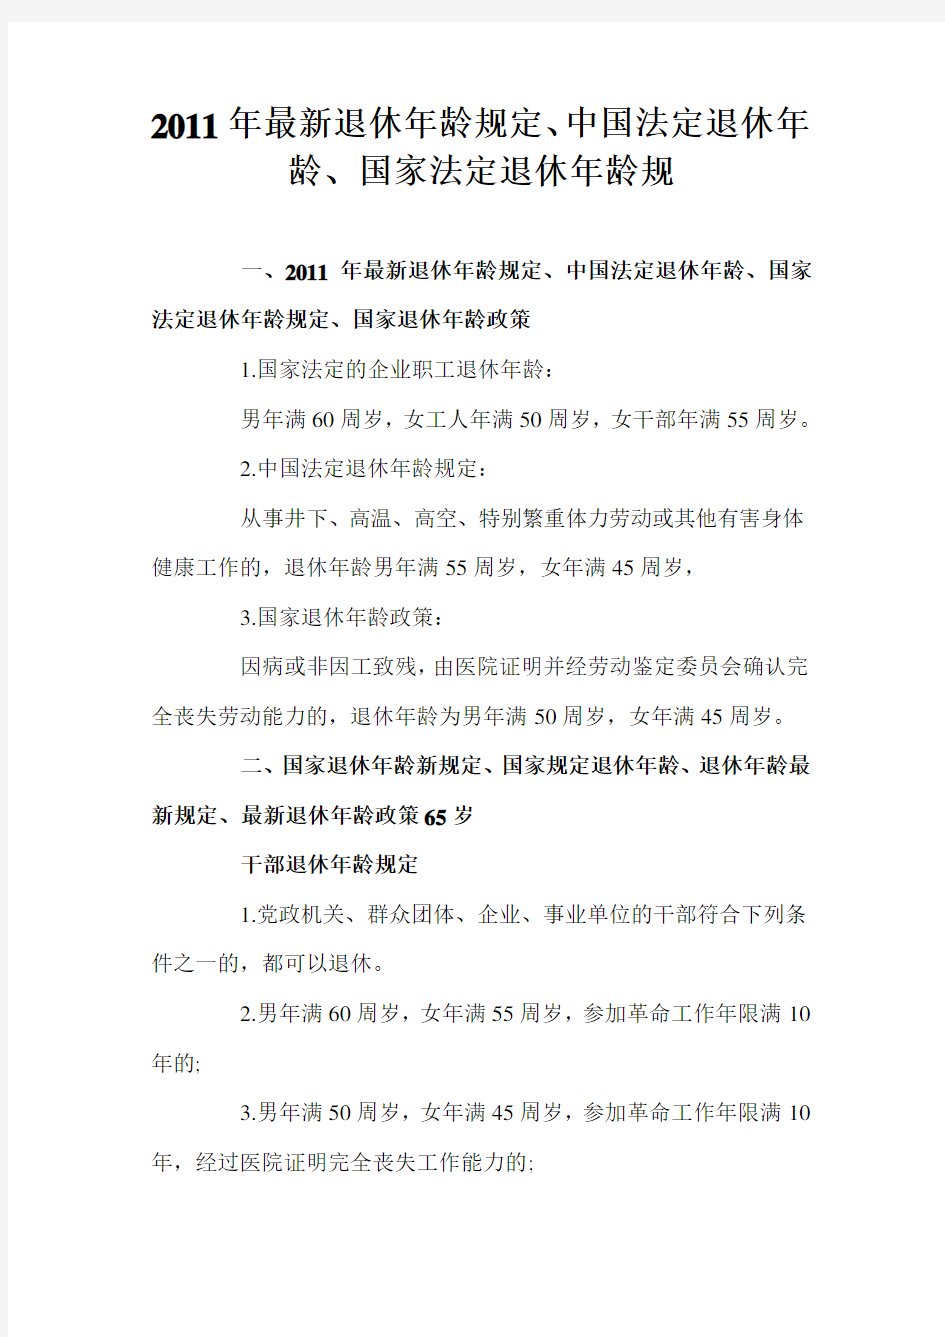 最新退休年龄规定、中国法定退休年龄、国家法定退休年龄规